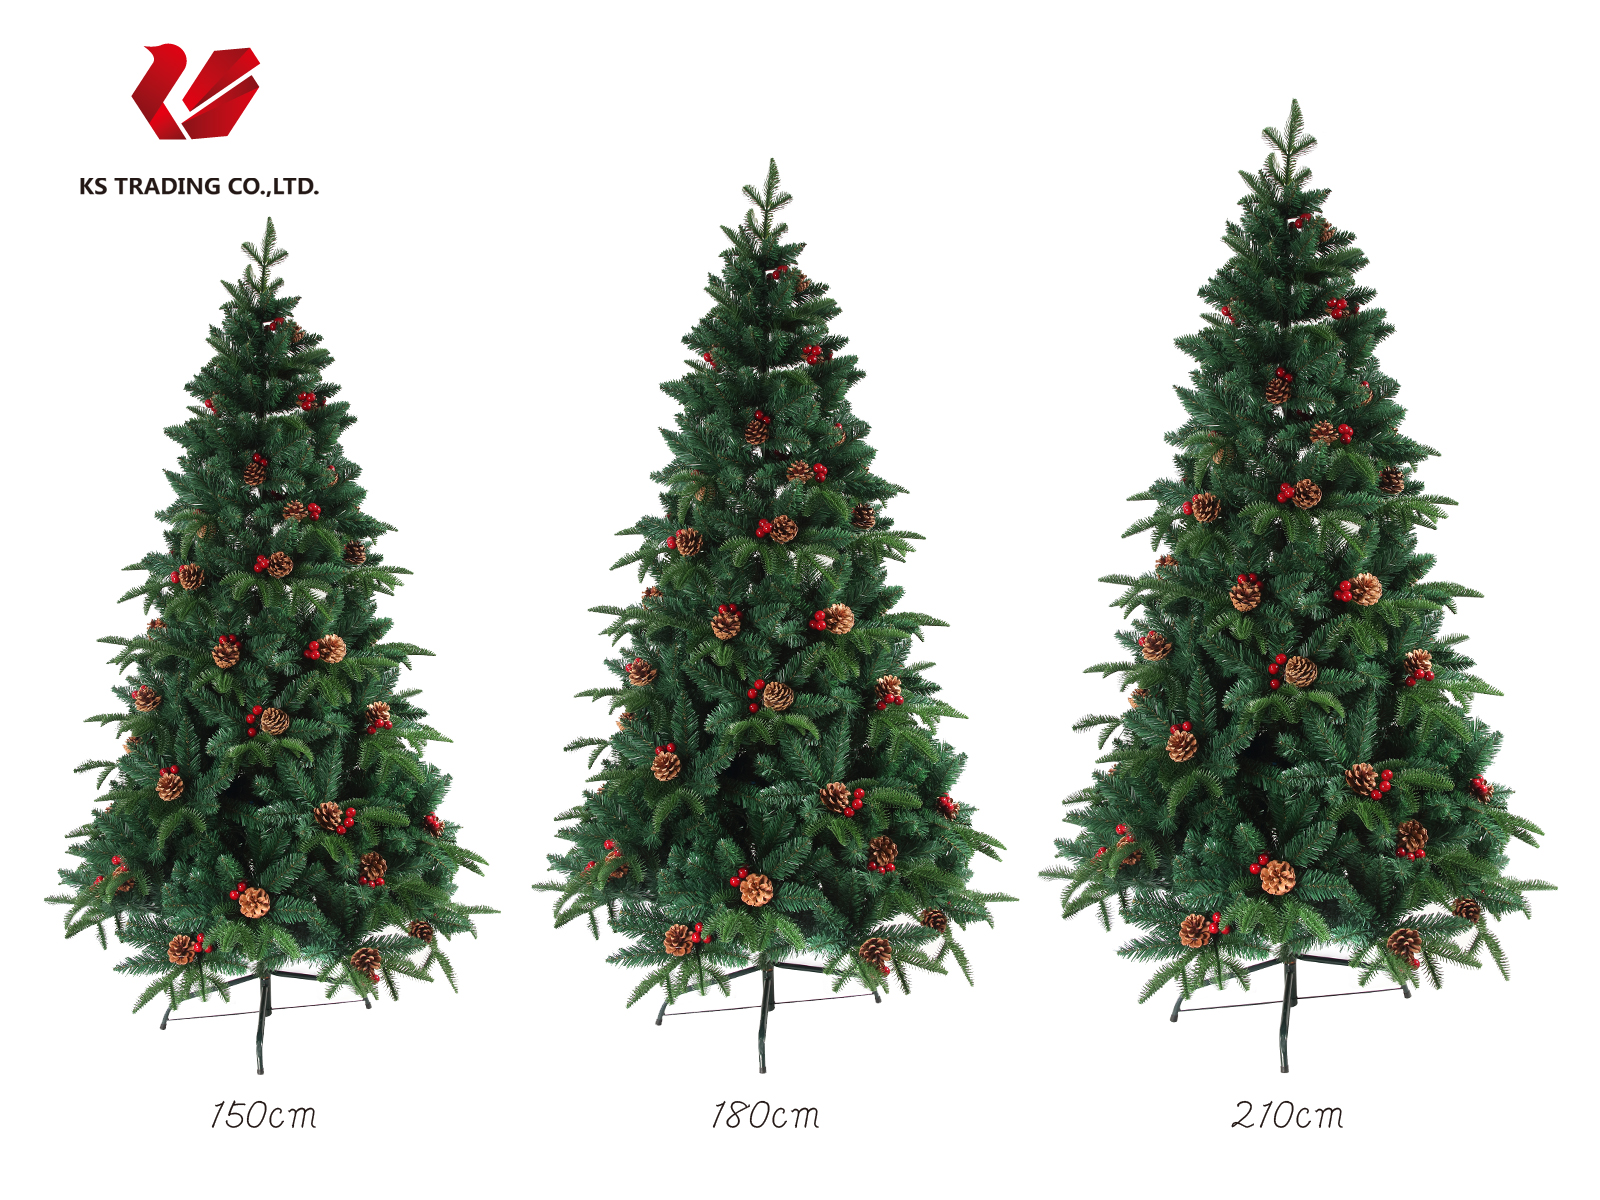 絶品 今だけ限定 北欧風クリスマスツリー クリスマスツリー 枝大幅増量タイプ 松ぼっくり付き 赤い実付き Ksbm 北欧風ツリー180cm